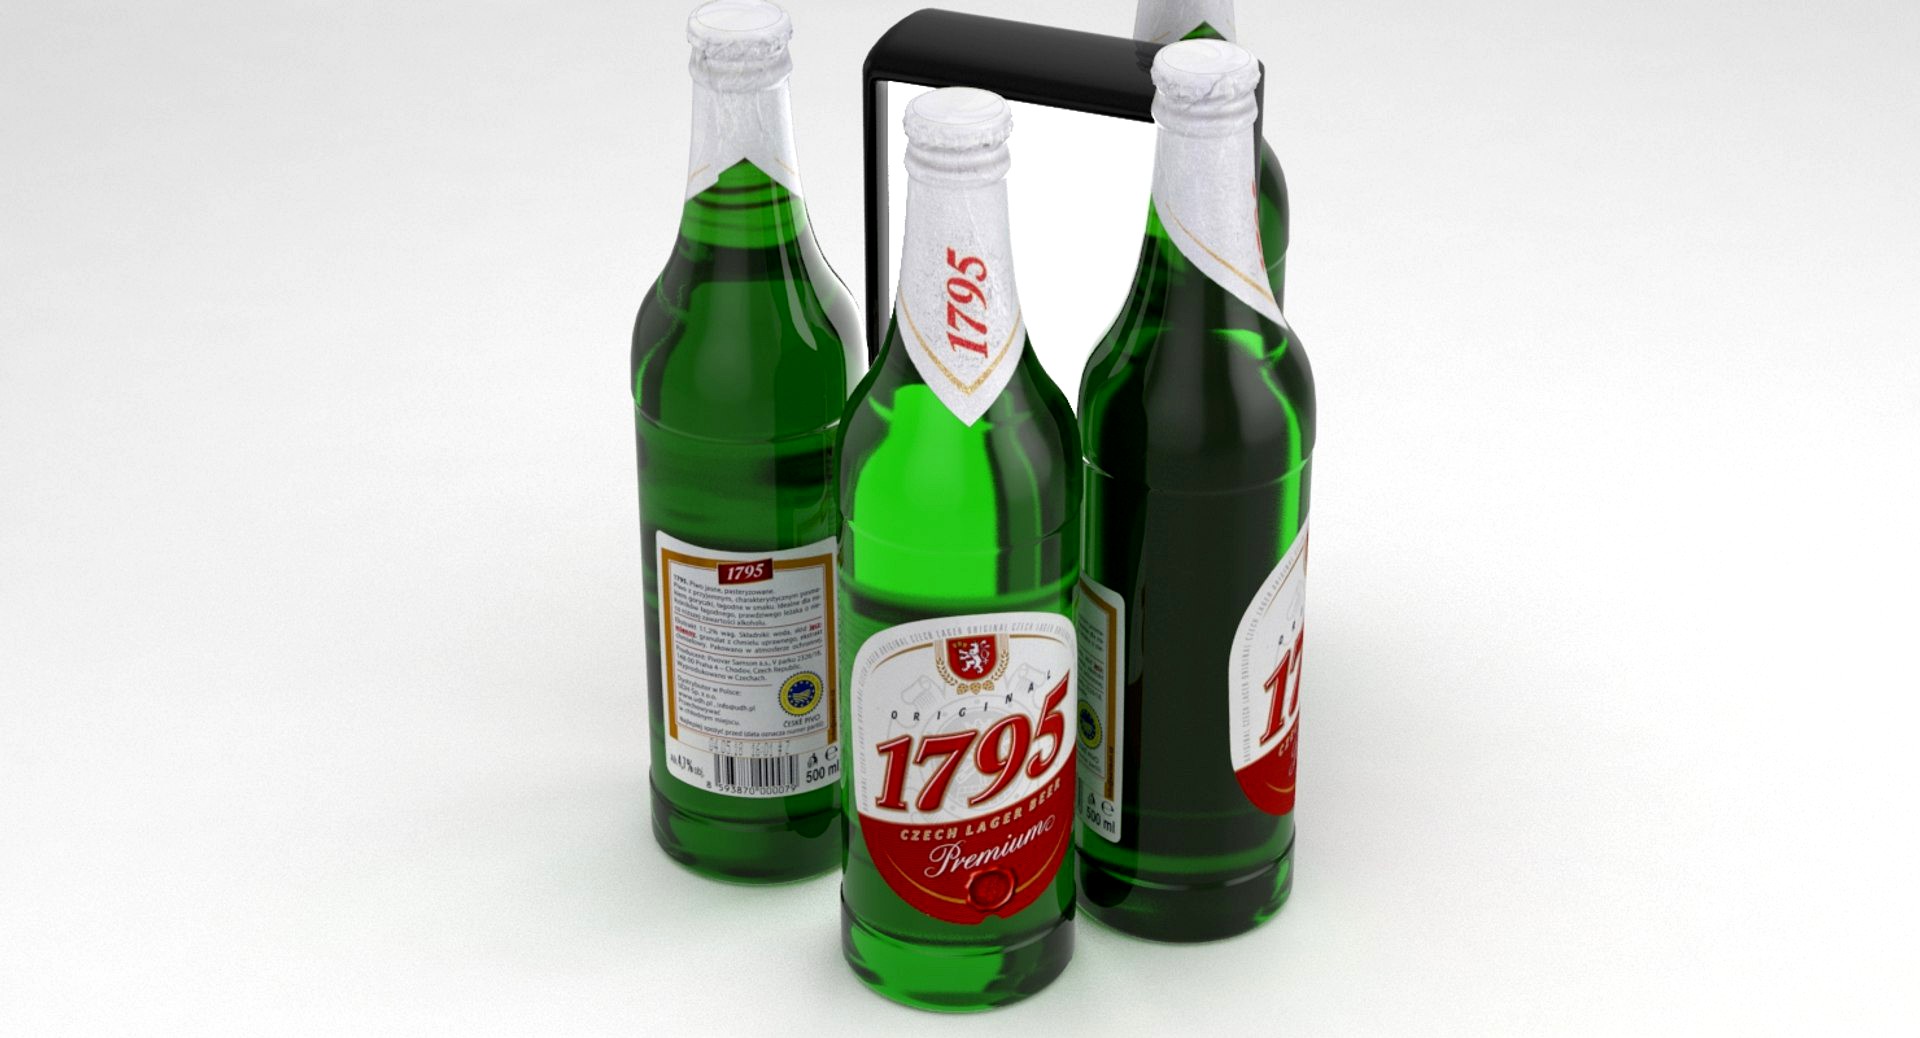 Beer Bottle 1795 Czech Lager 500ml